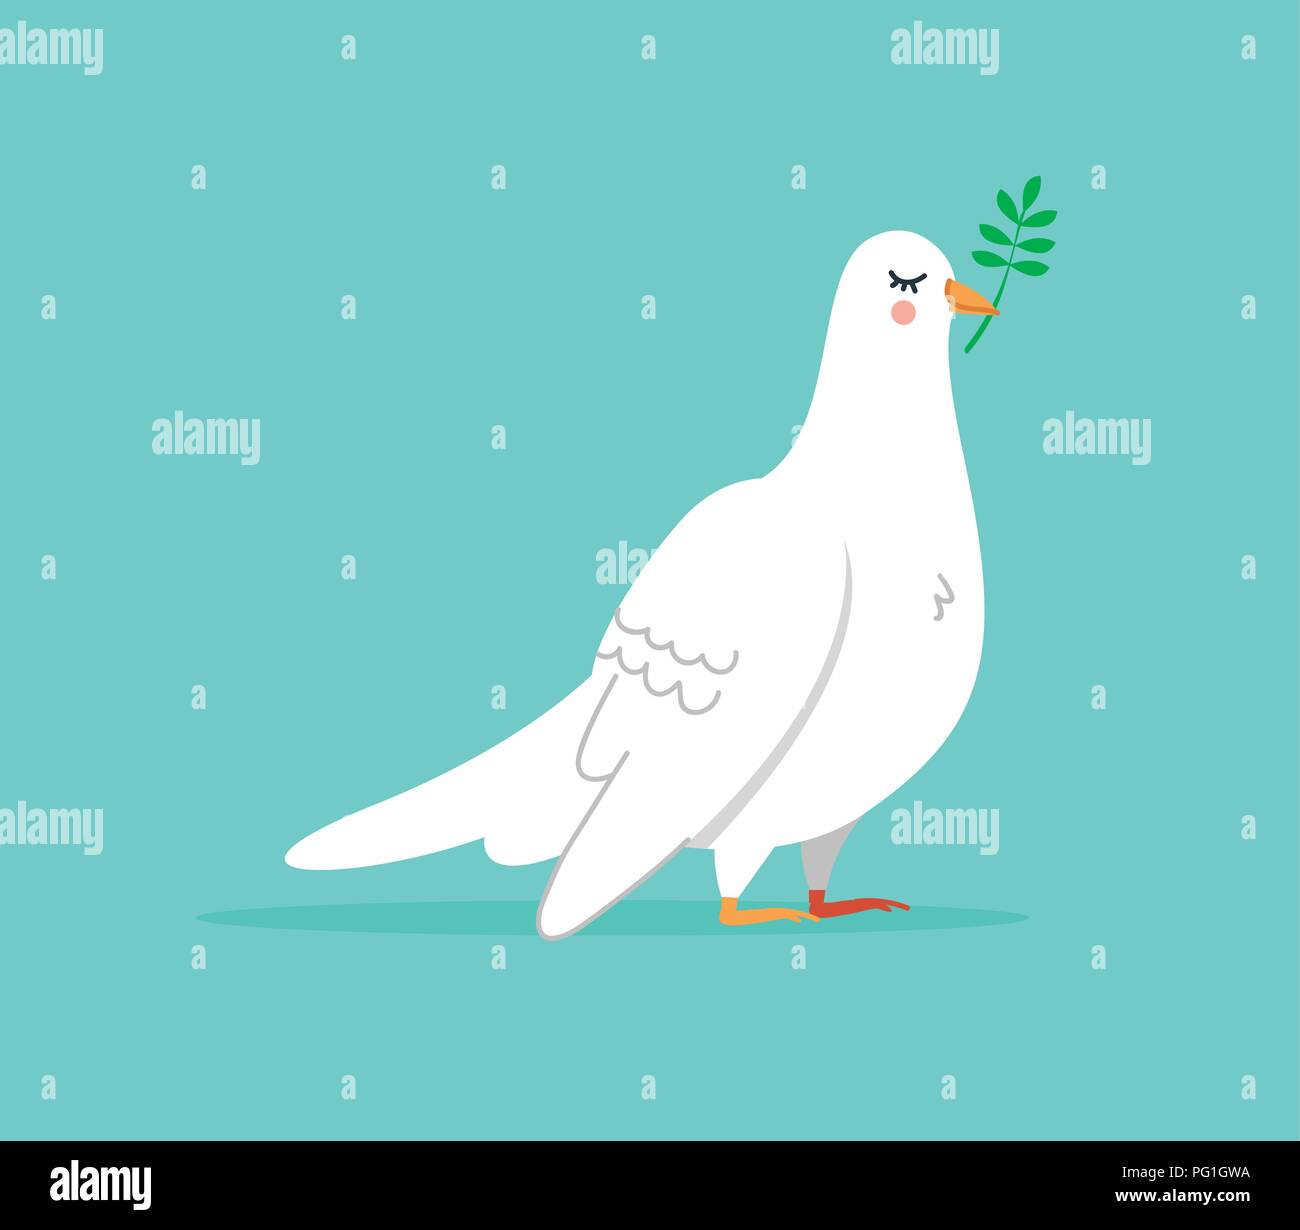 Isolierte weiße Taube Illustration, niedlichen Vogel Tier in der Hand gezeichneten Stil für Frieden und Glück. EPS 10 Vektor. Stock Vektor